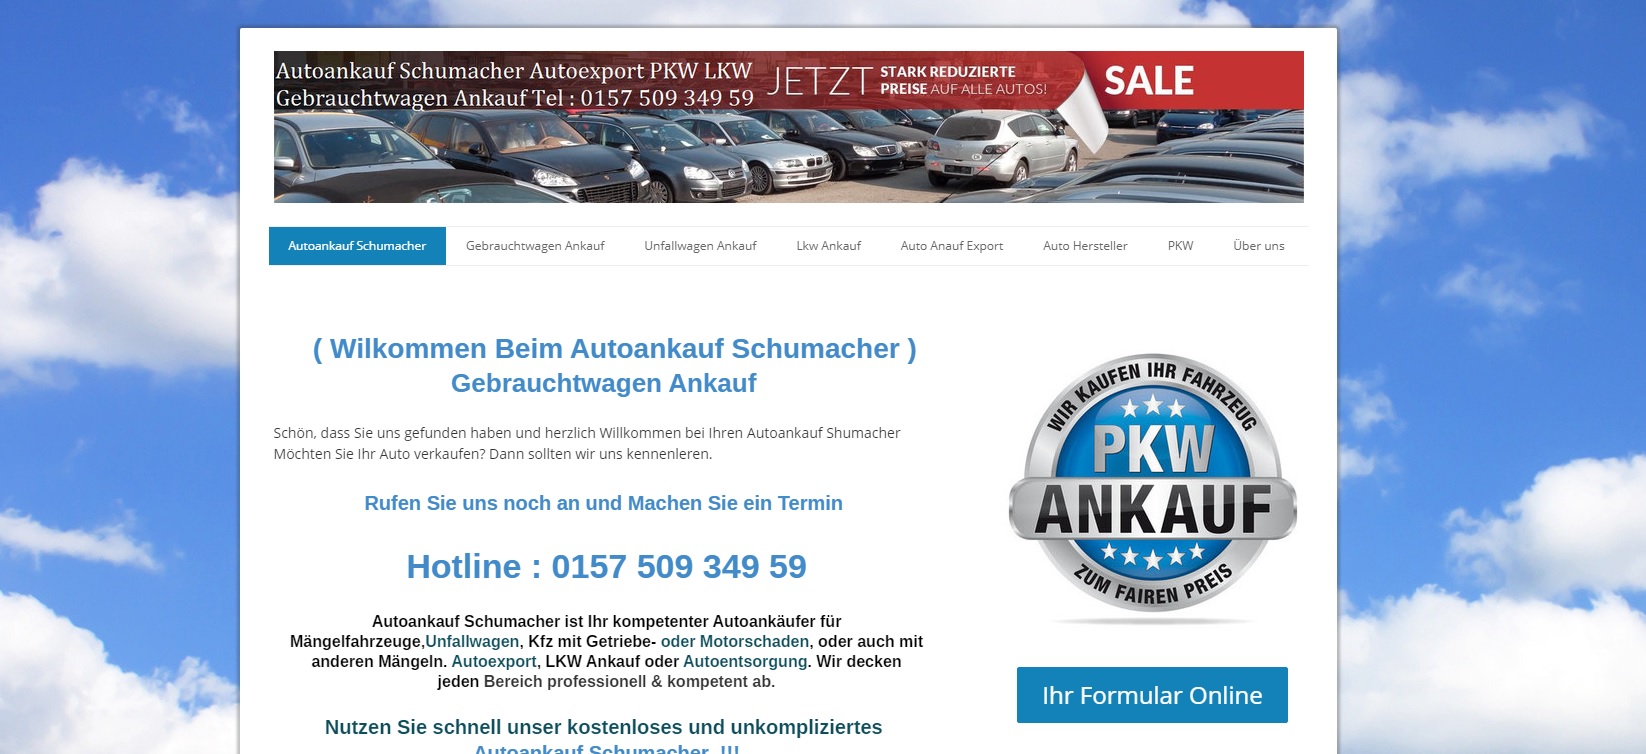 autoankauf mainz wir bieten ihnen mehr fuer ihr auto - Autoankauf Mainz – Wir bieten Ihnen mehr für Ihr Auto